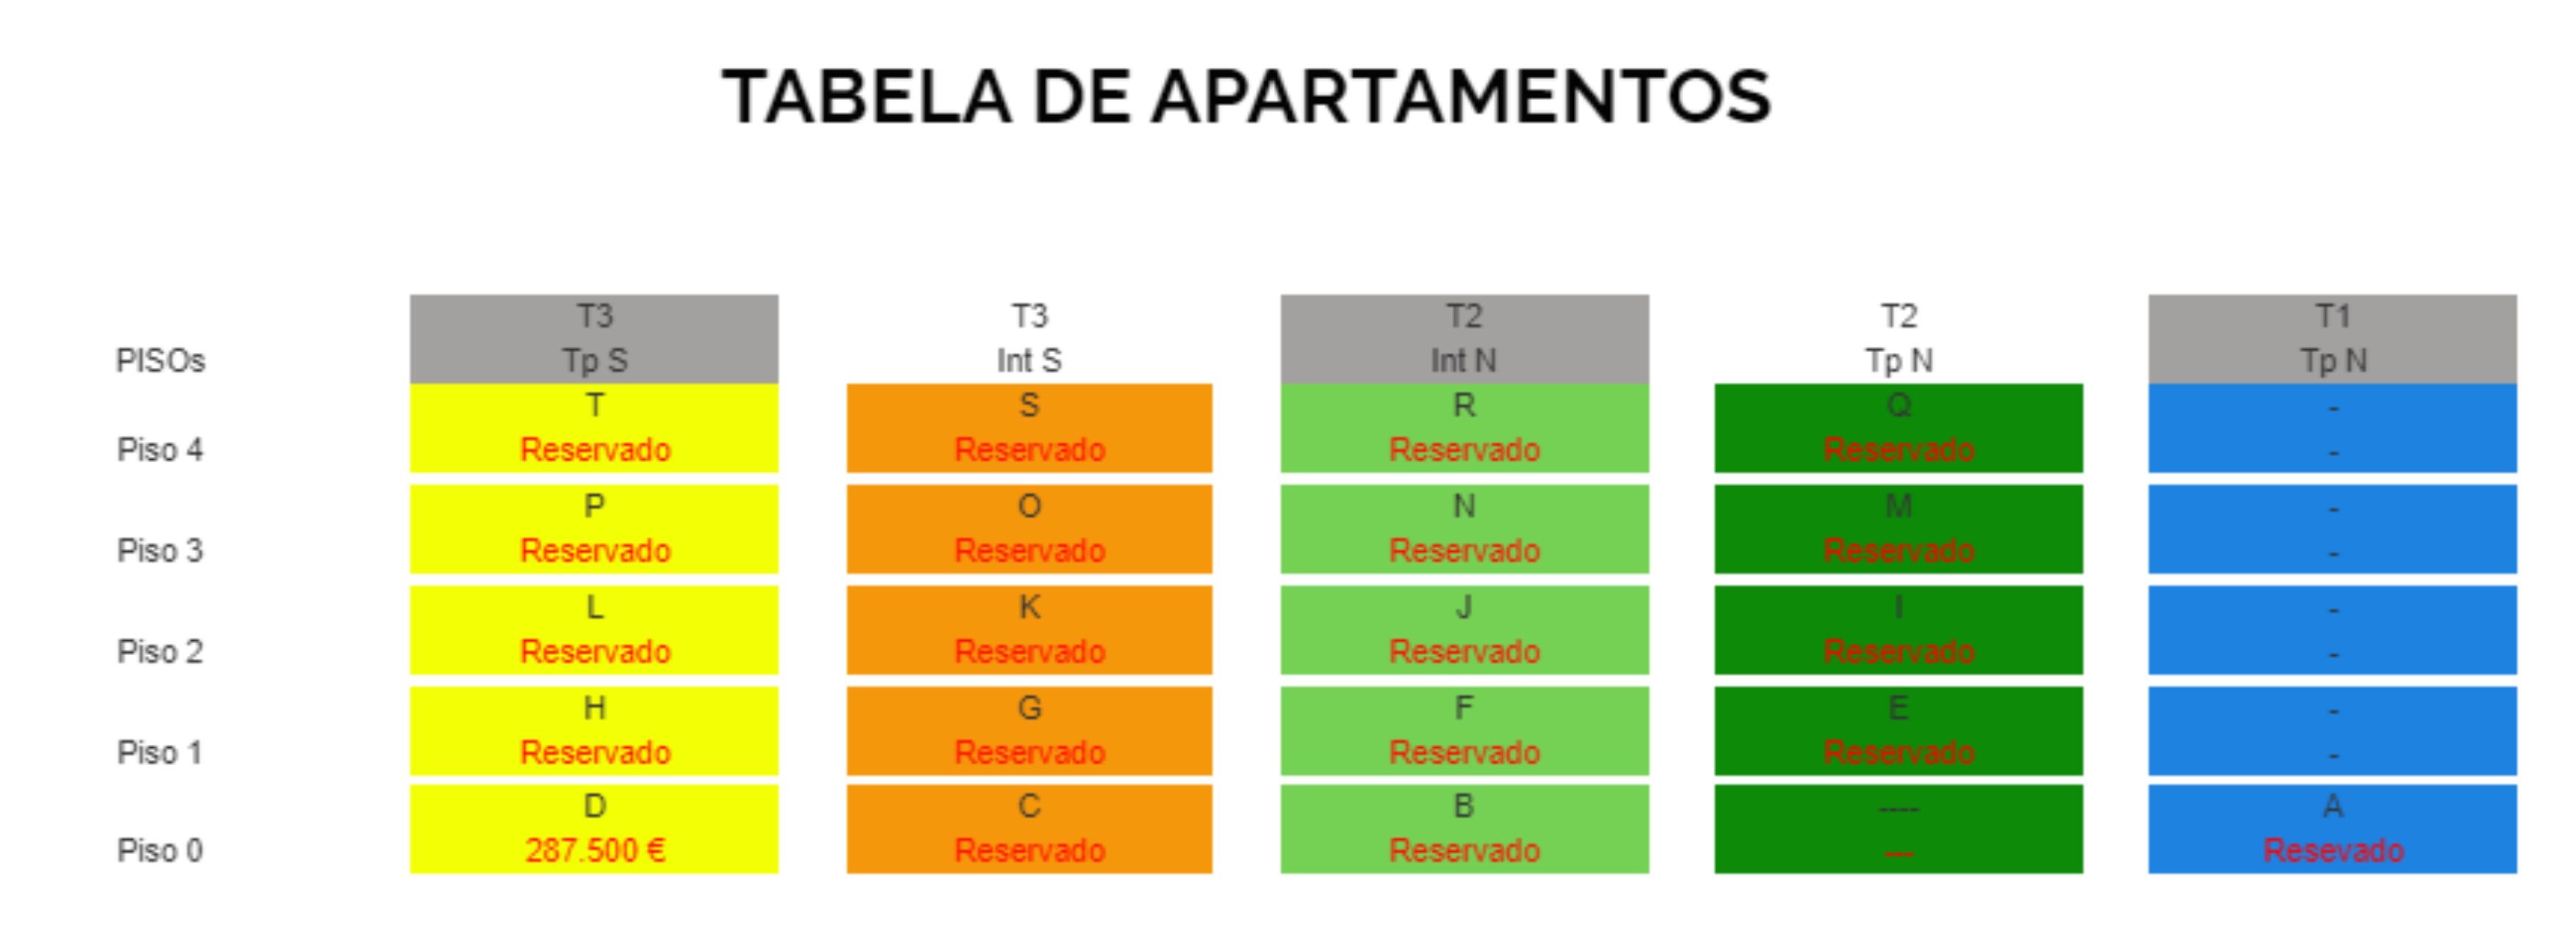 Tabela de Apartamentos